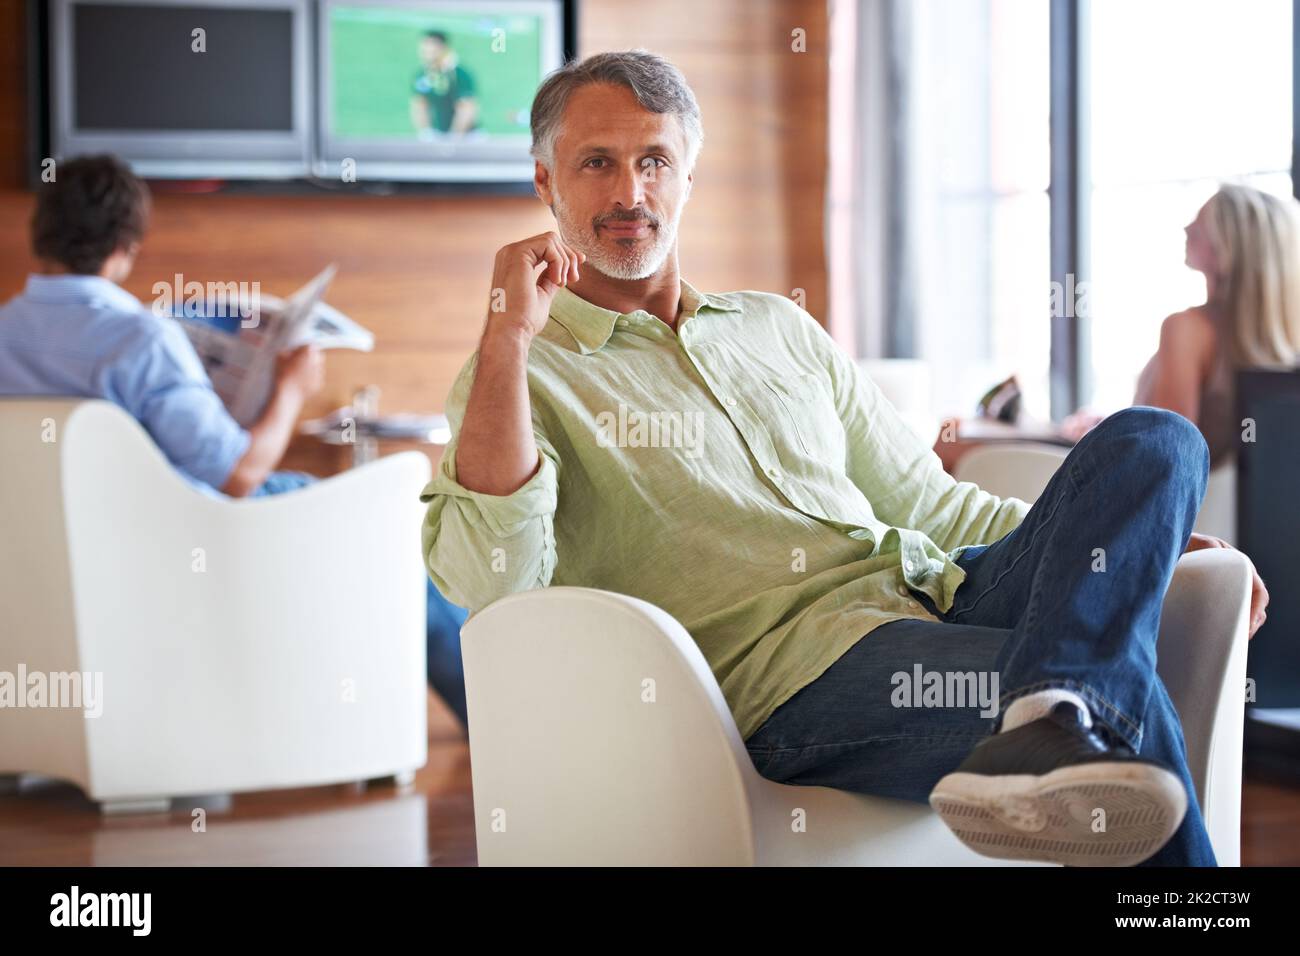 Jedes Büro braucht einen Ort zum Entspannen. Aufnahme eines Mannes, der in Innenräumen selbstbewusst auf einem Stuhl sitzt. Stockfoto